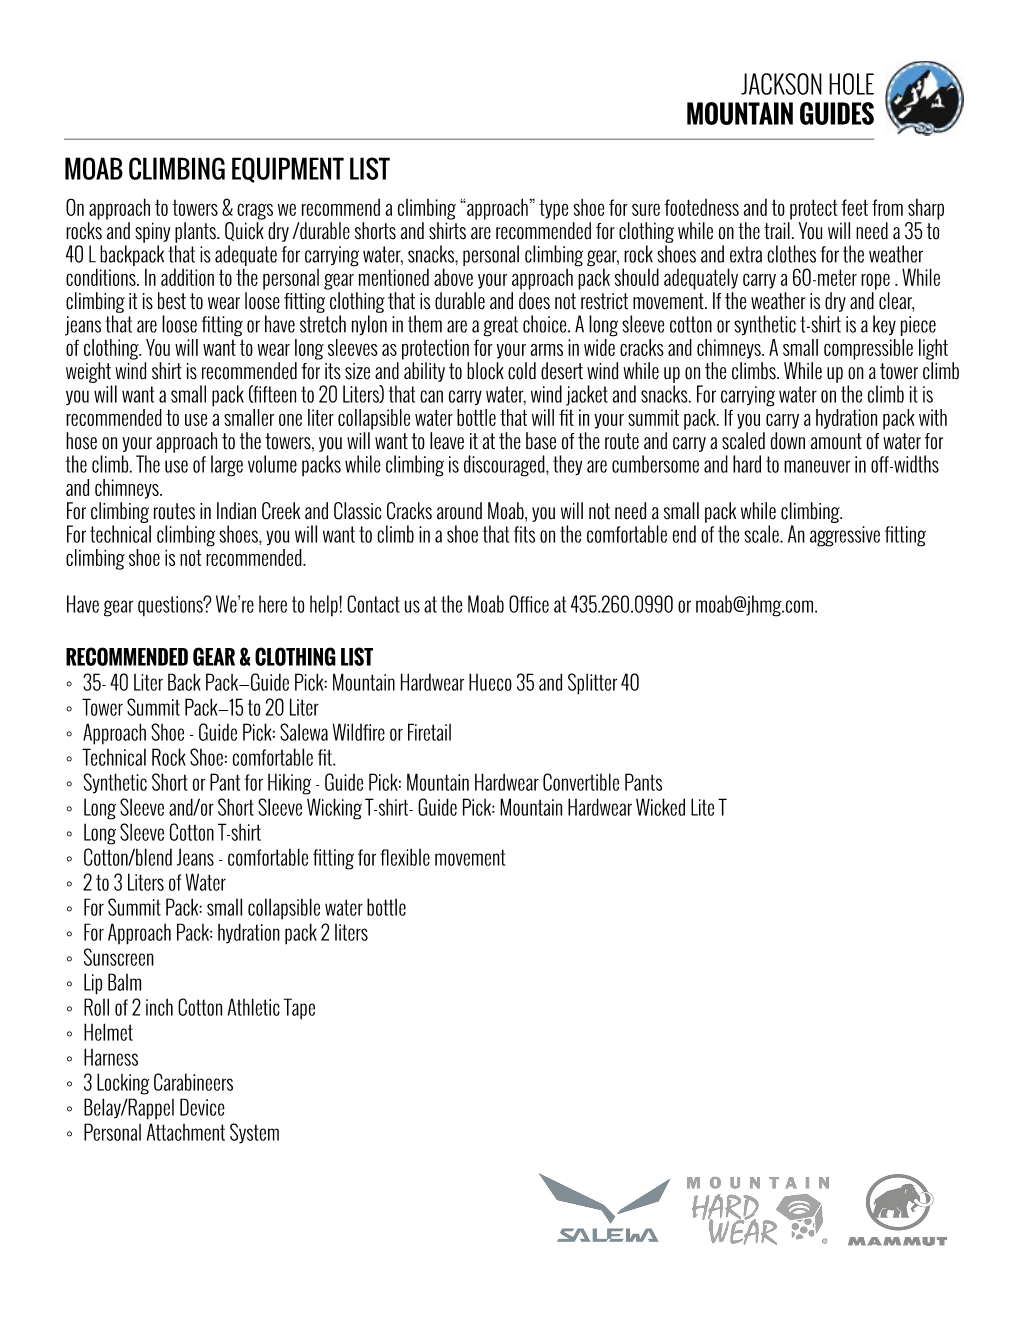 JHMG MOAB Climbing Equipment List